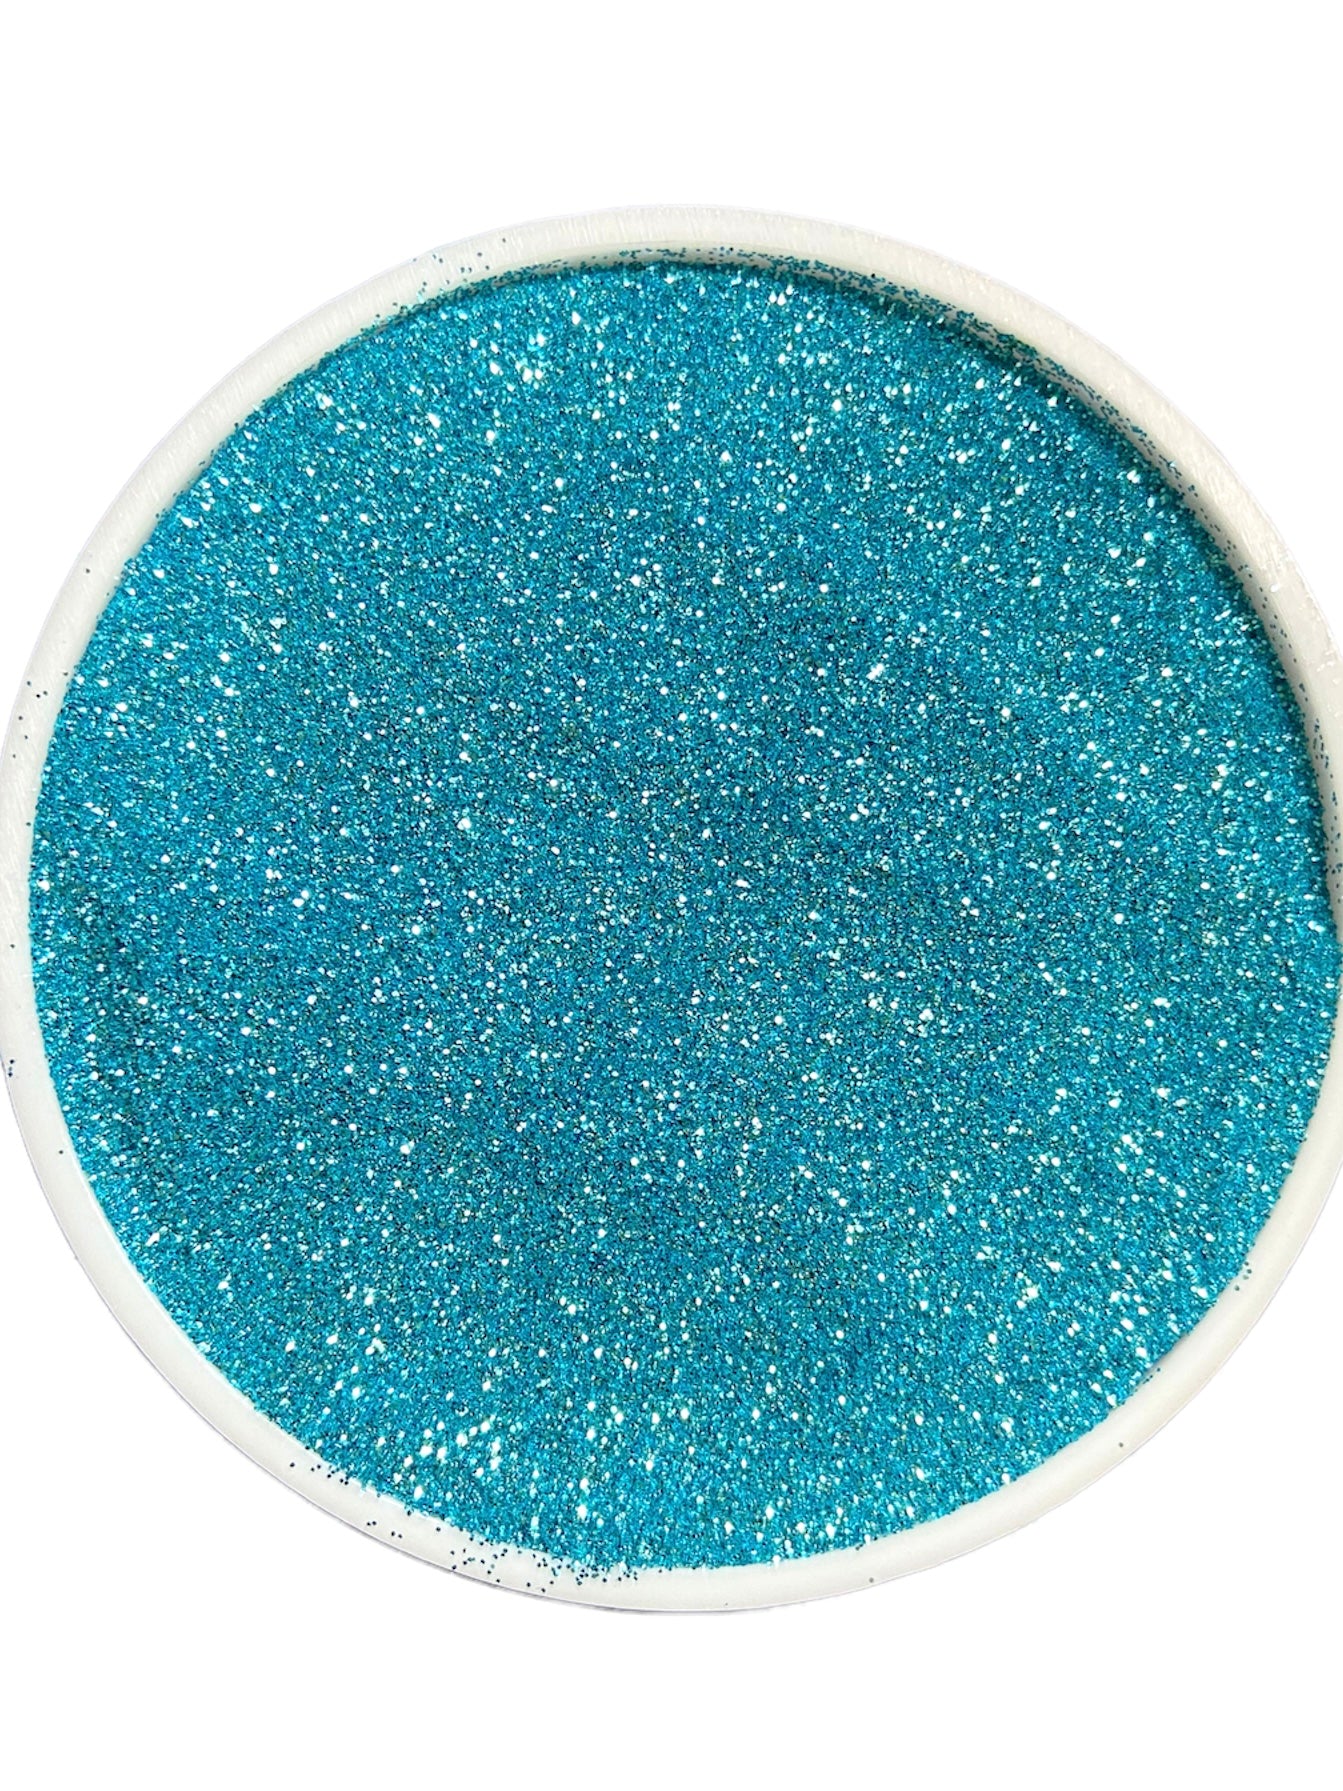 Blue raspberry solid color fine glitter